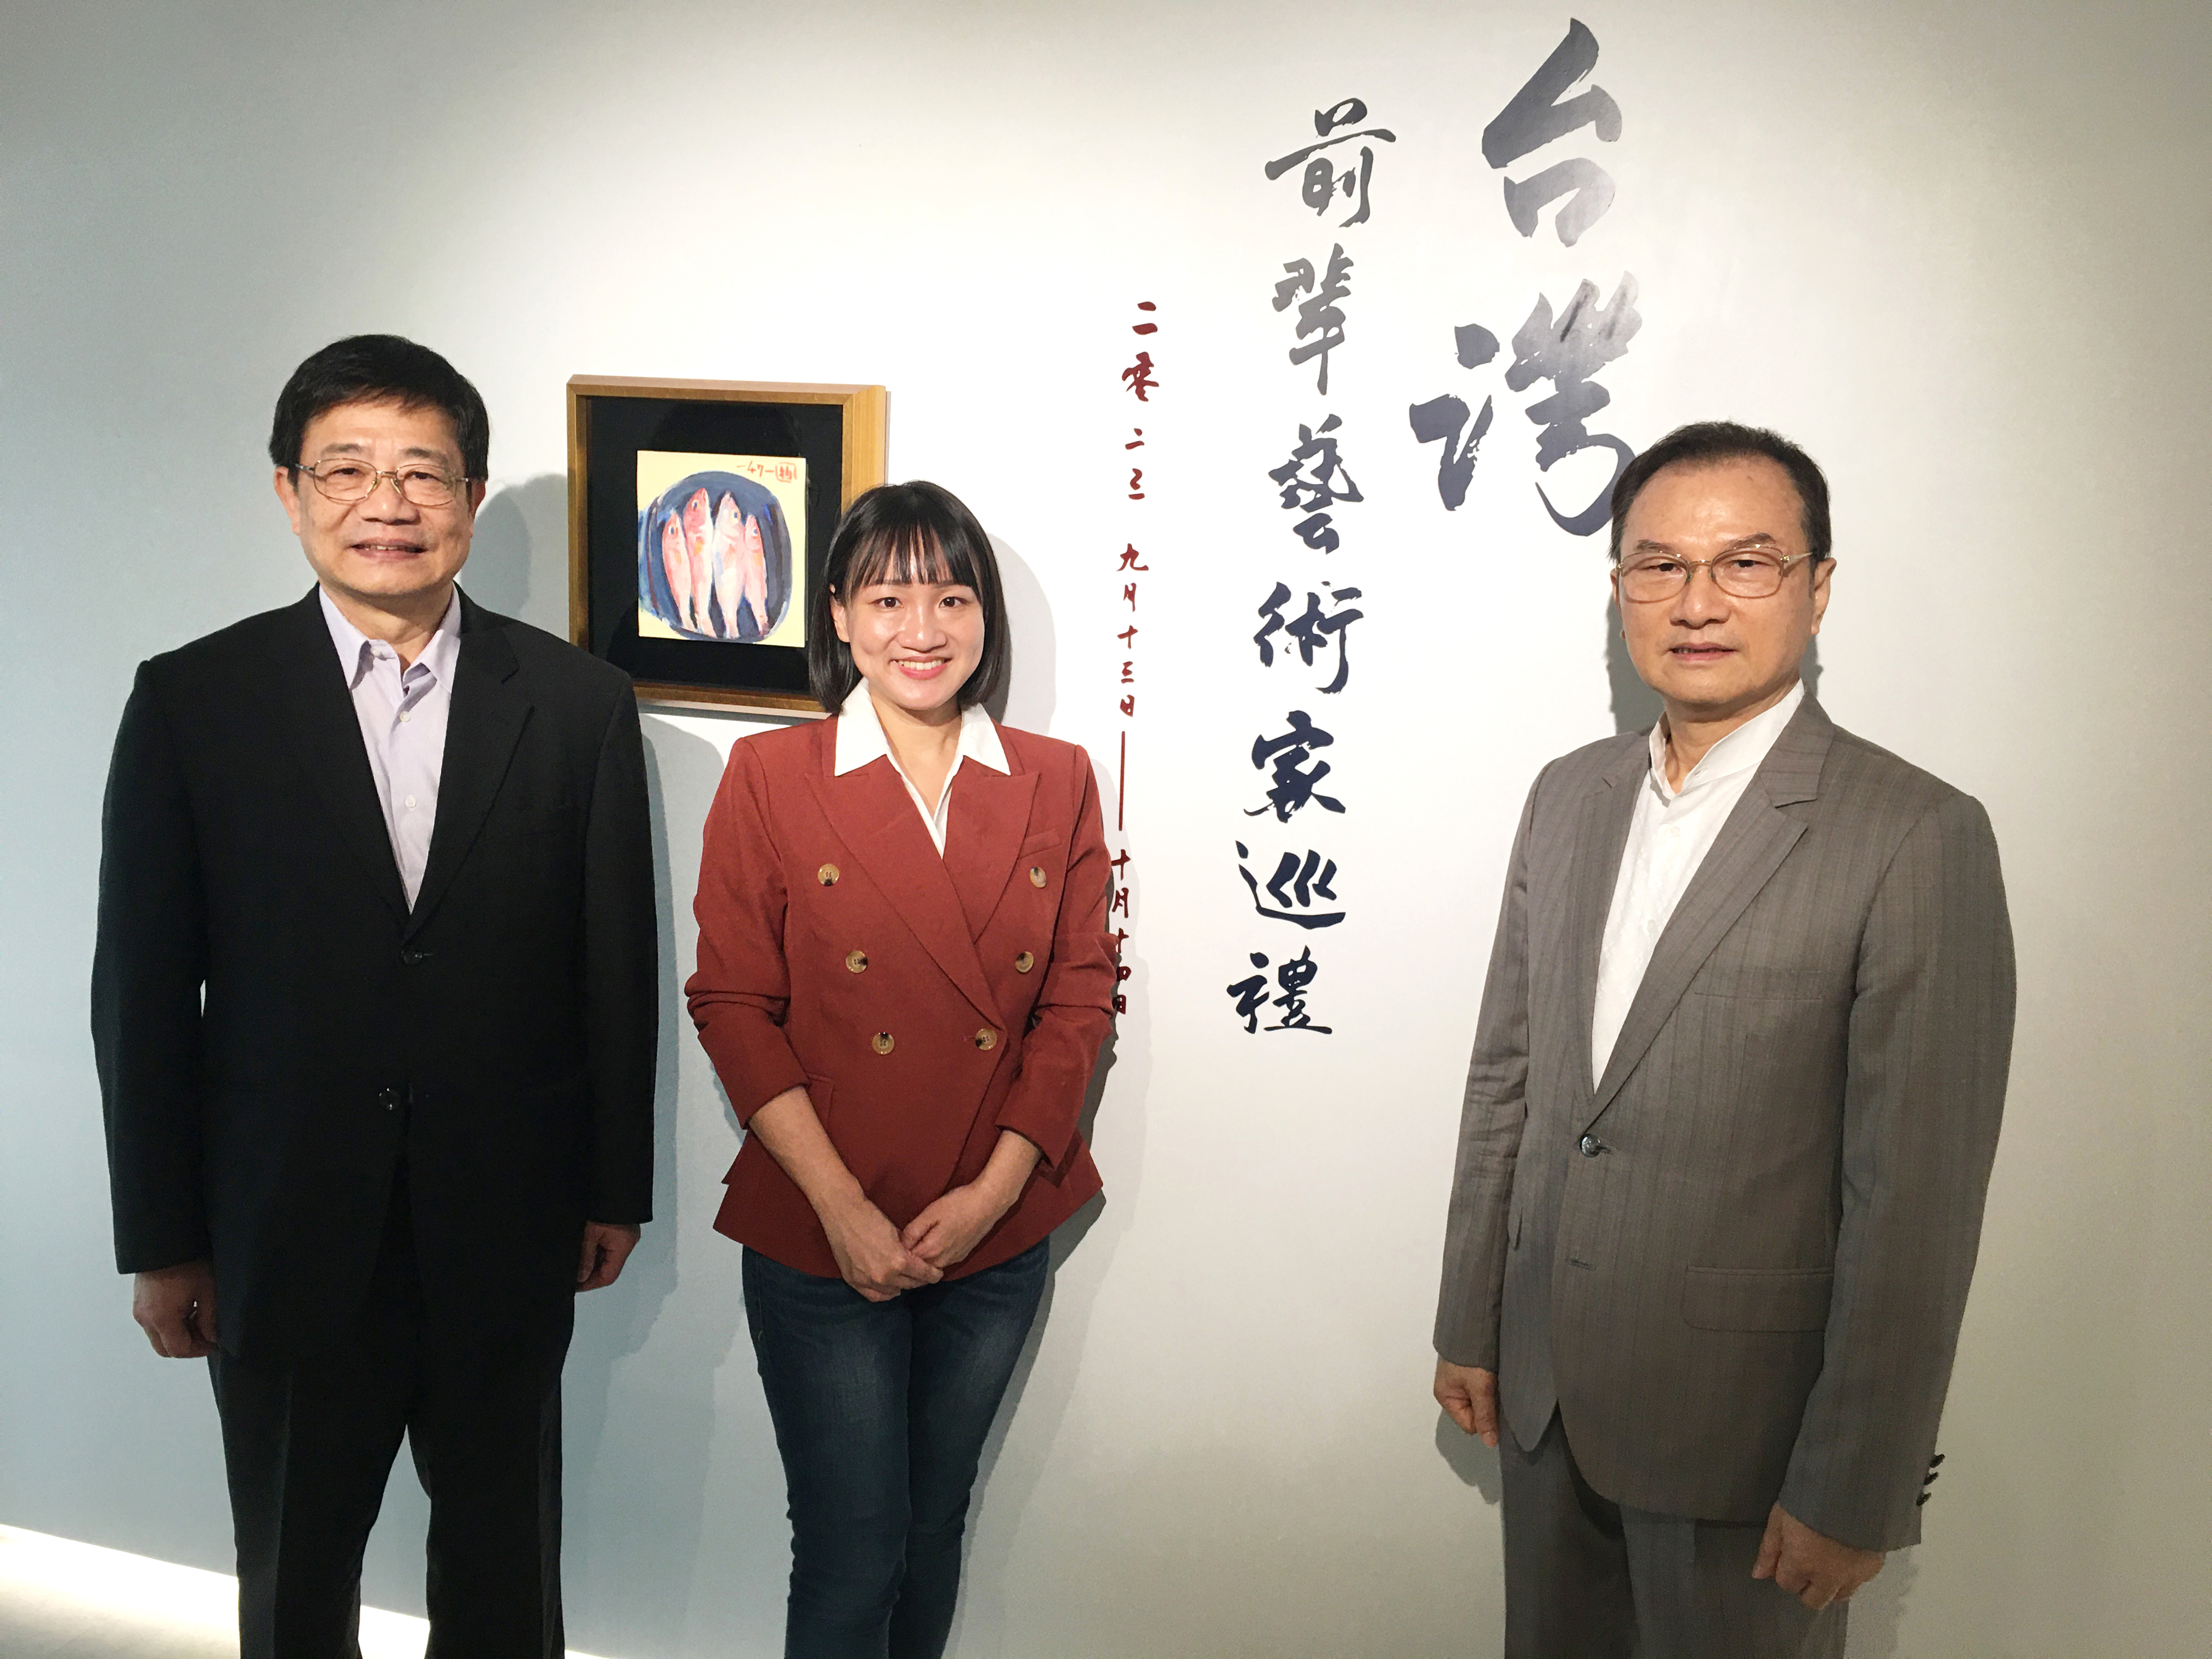 專 訪 地 點 在 理 善 藝 聚 空 間 ， 此 次 剛 好 展 出 台 灣 本 土 藝 術 前 輩 作 品 。 圖 為 理 周 集 團 總 裁 洪 寶 山 ( 右 ) 、 謝 佩 芬 ( 中 ) 與 啟 鼎 國 際 公 司 董 事 長 林 瑞 祥 。 